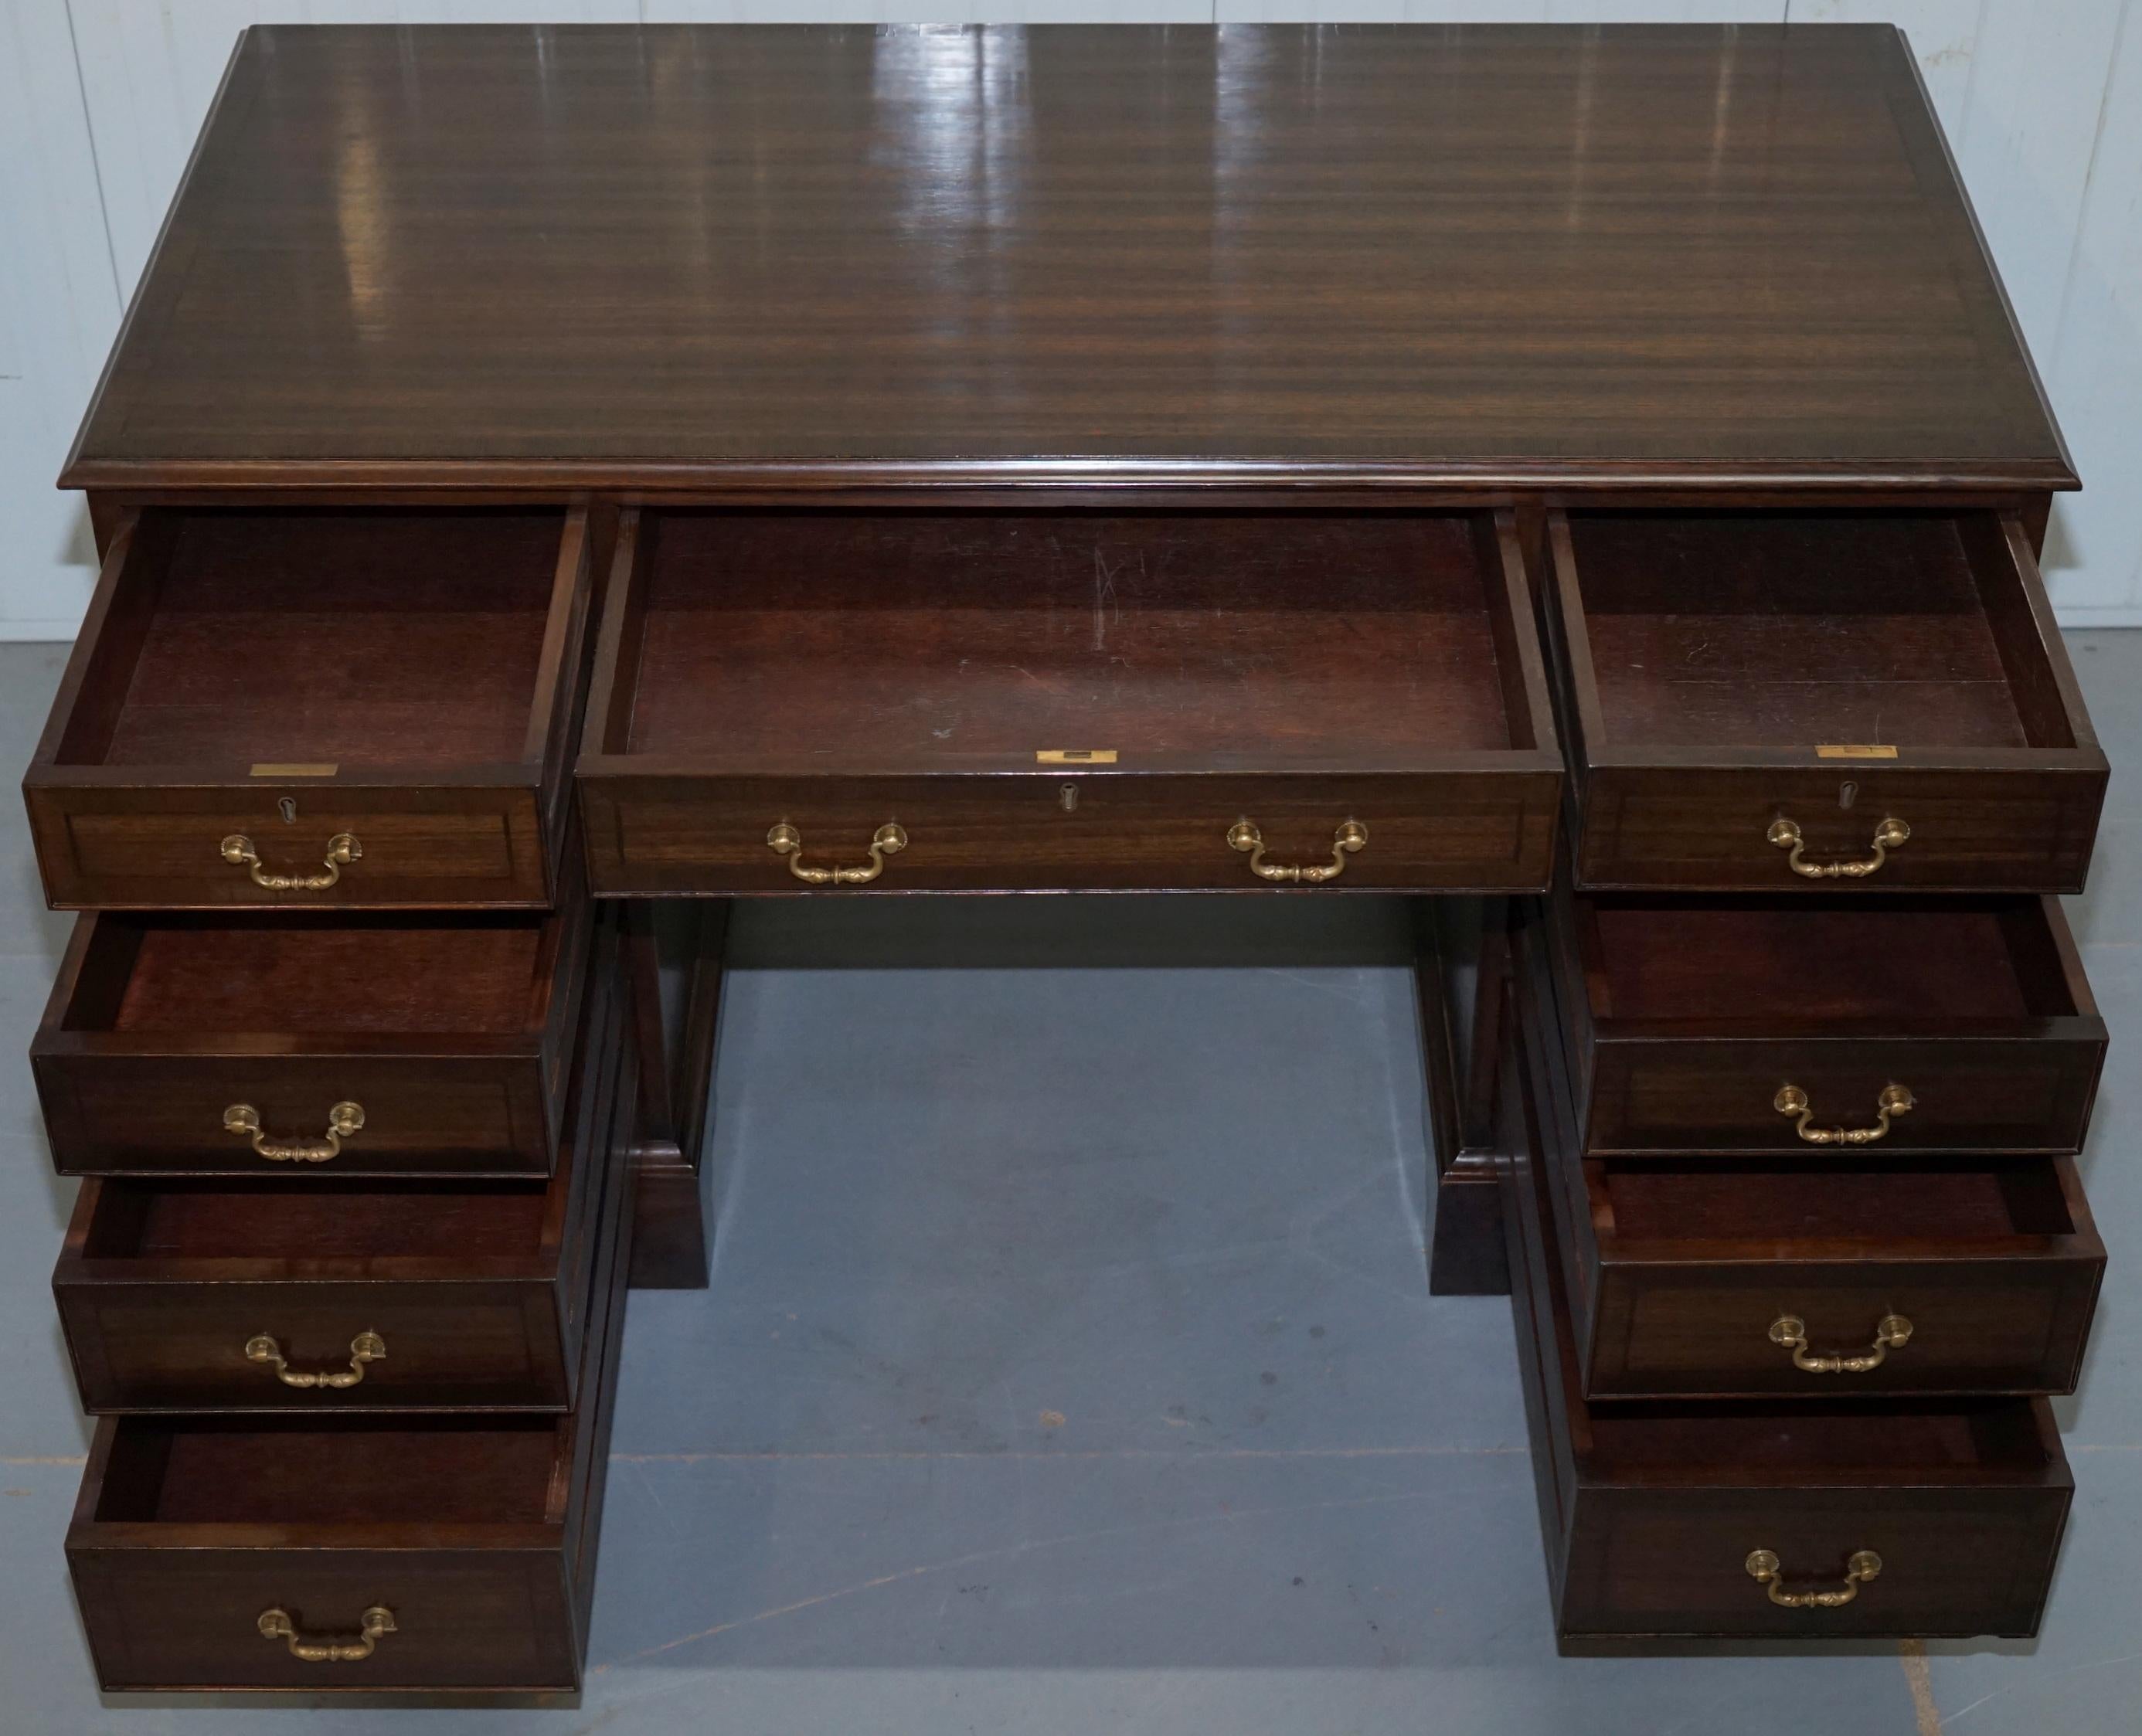 Vintage Stunning Large Solid Hardwood Twin Pedestal Partner Desk Rare Find 8